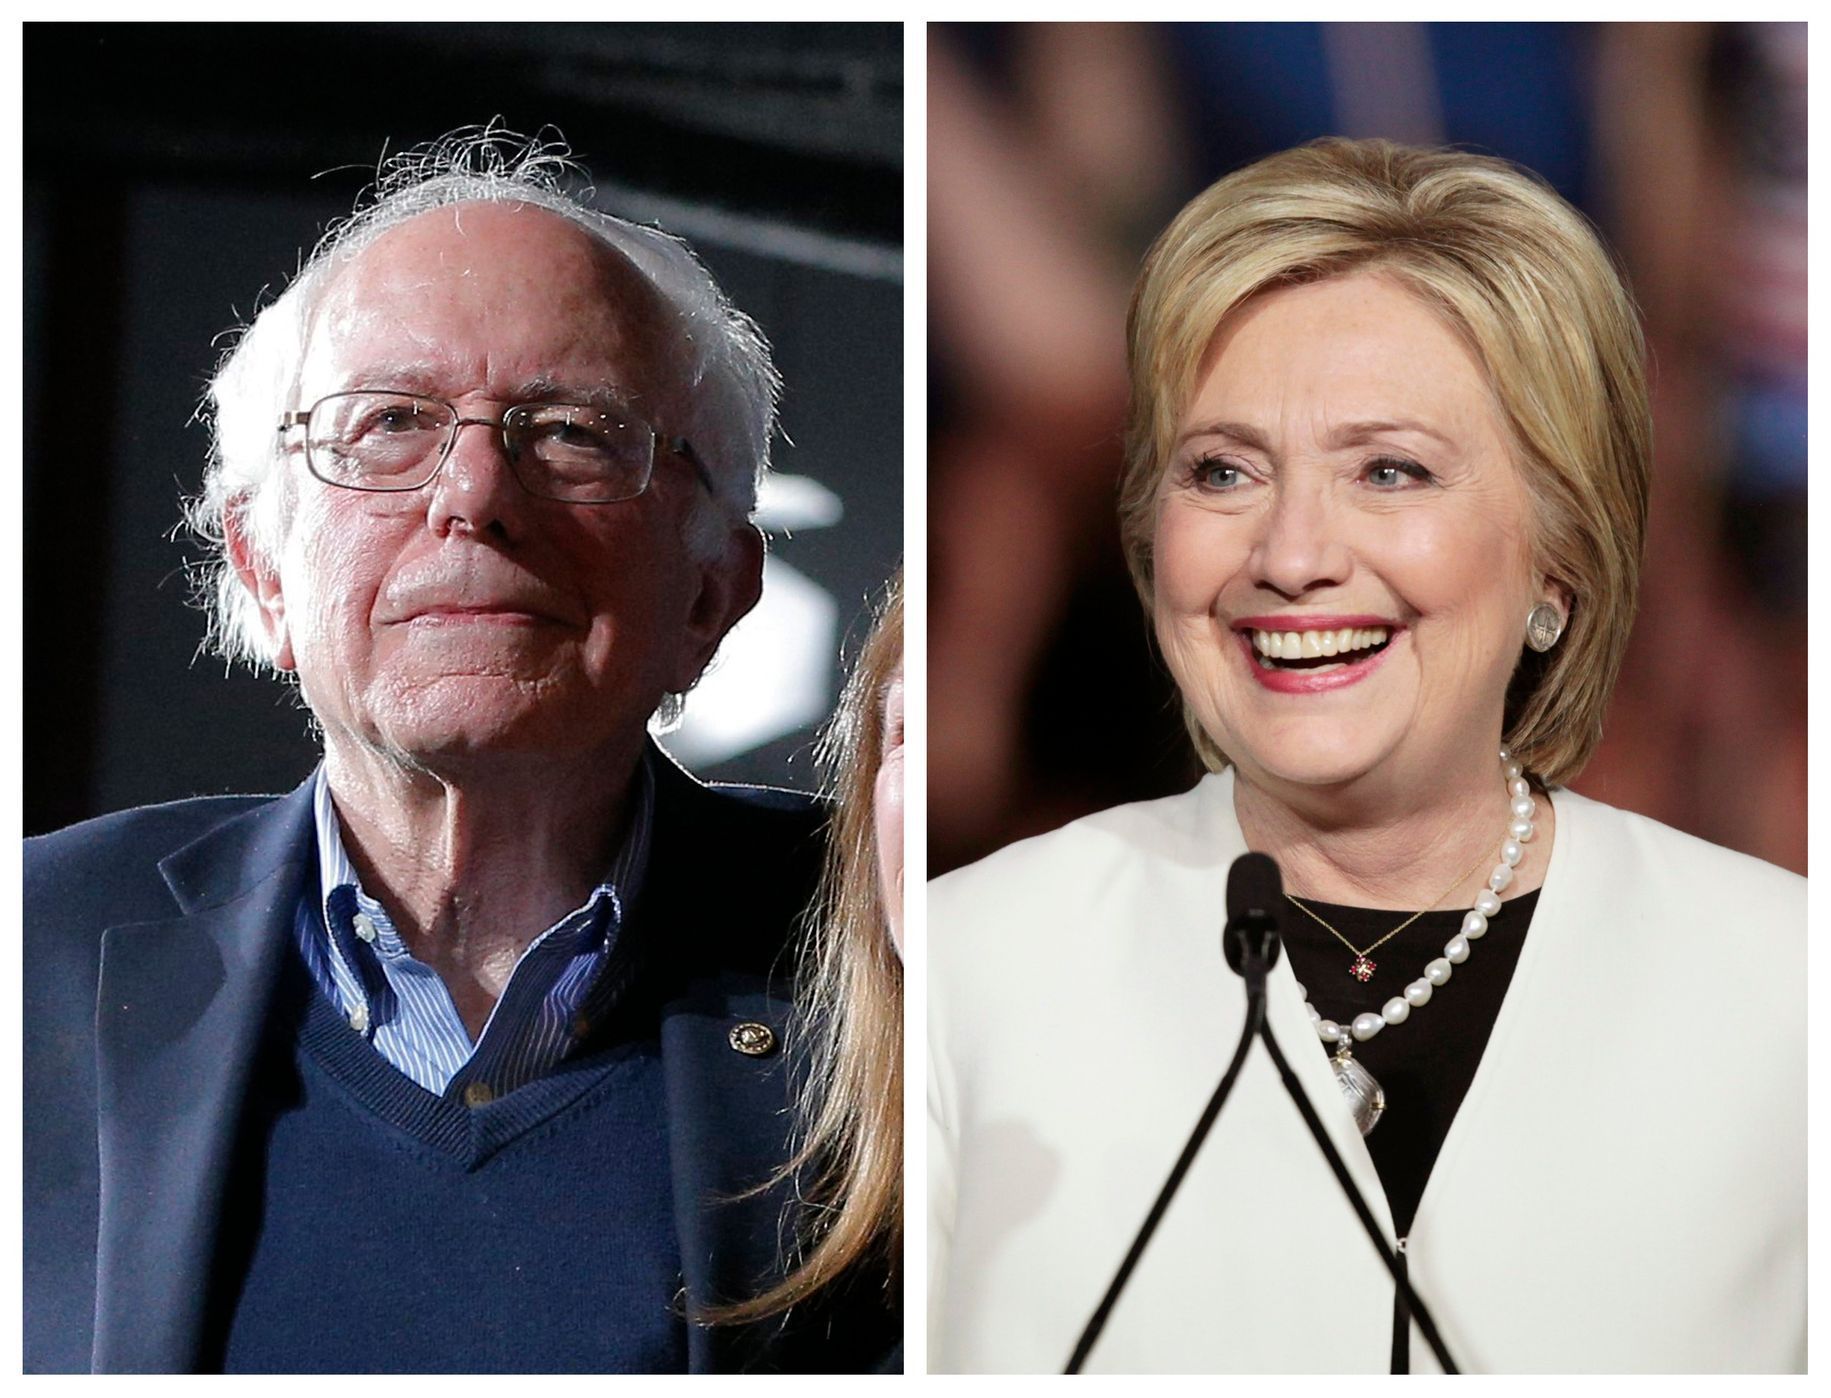 Sanders vs. Clintonová